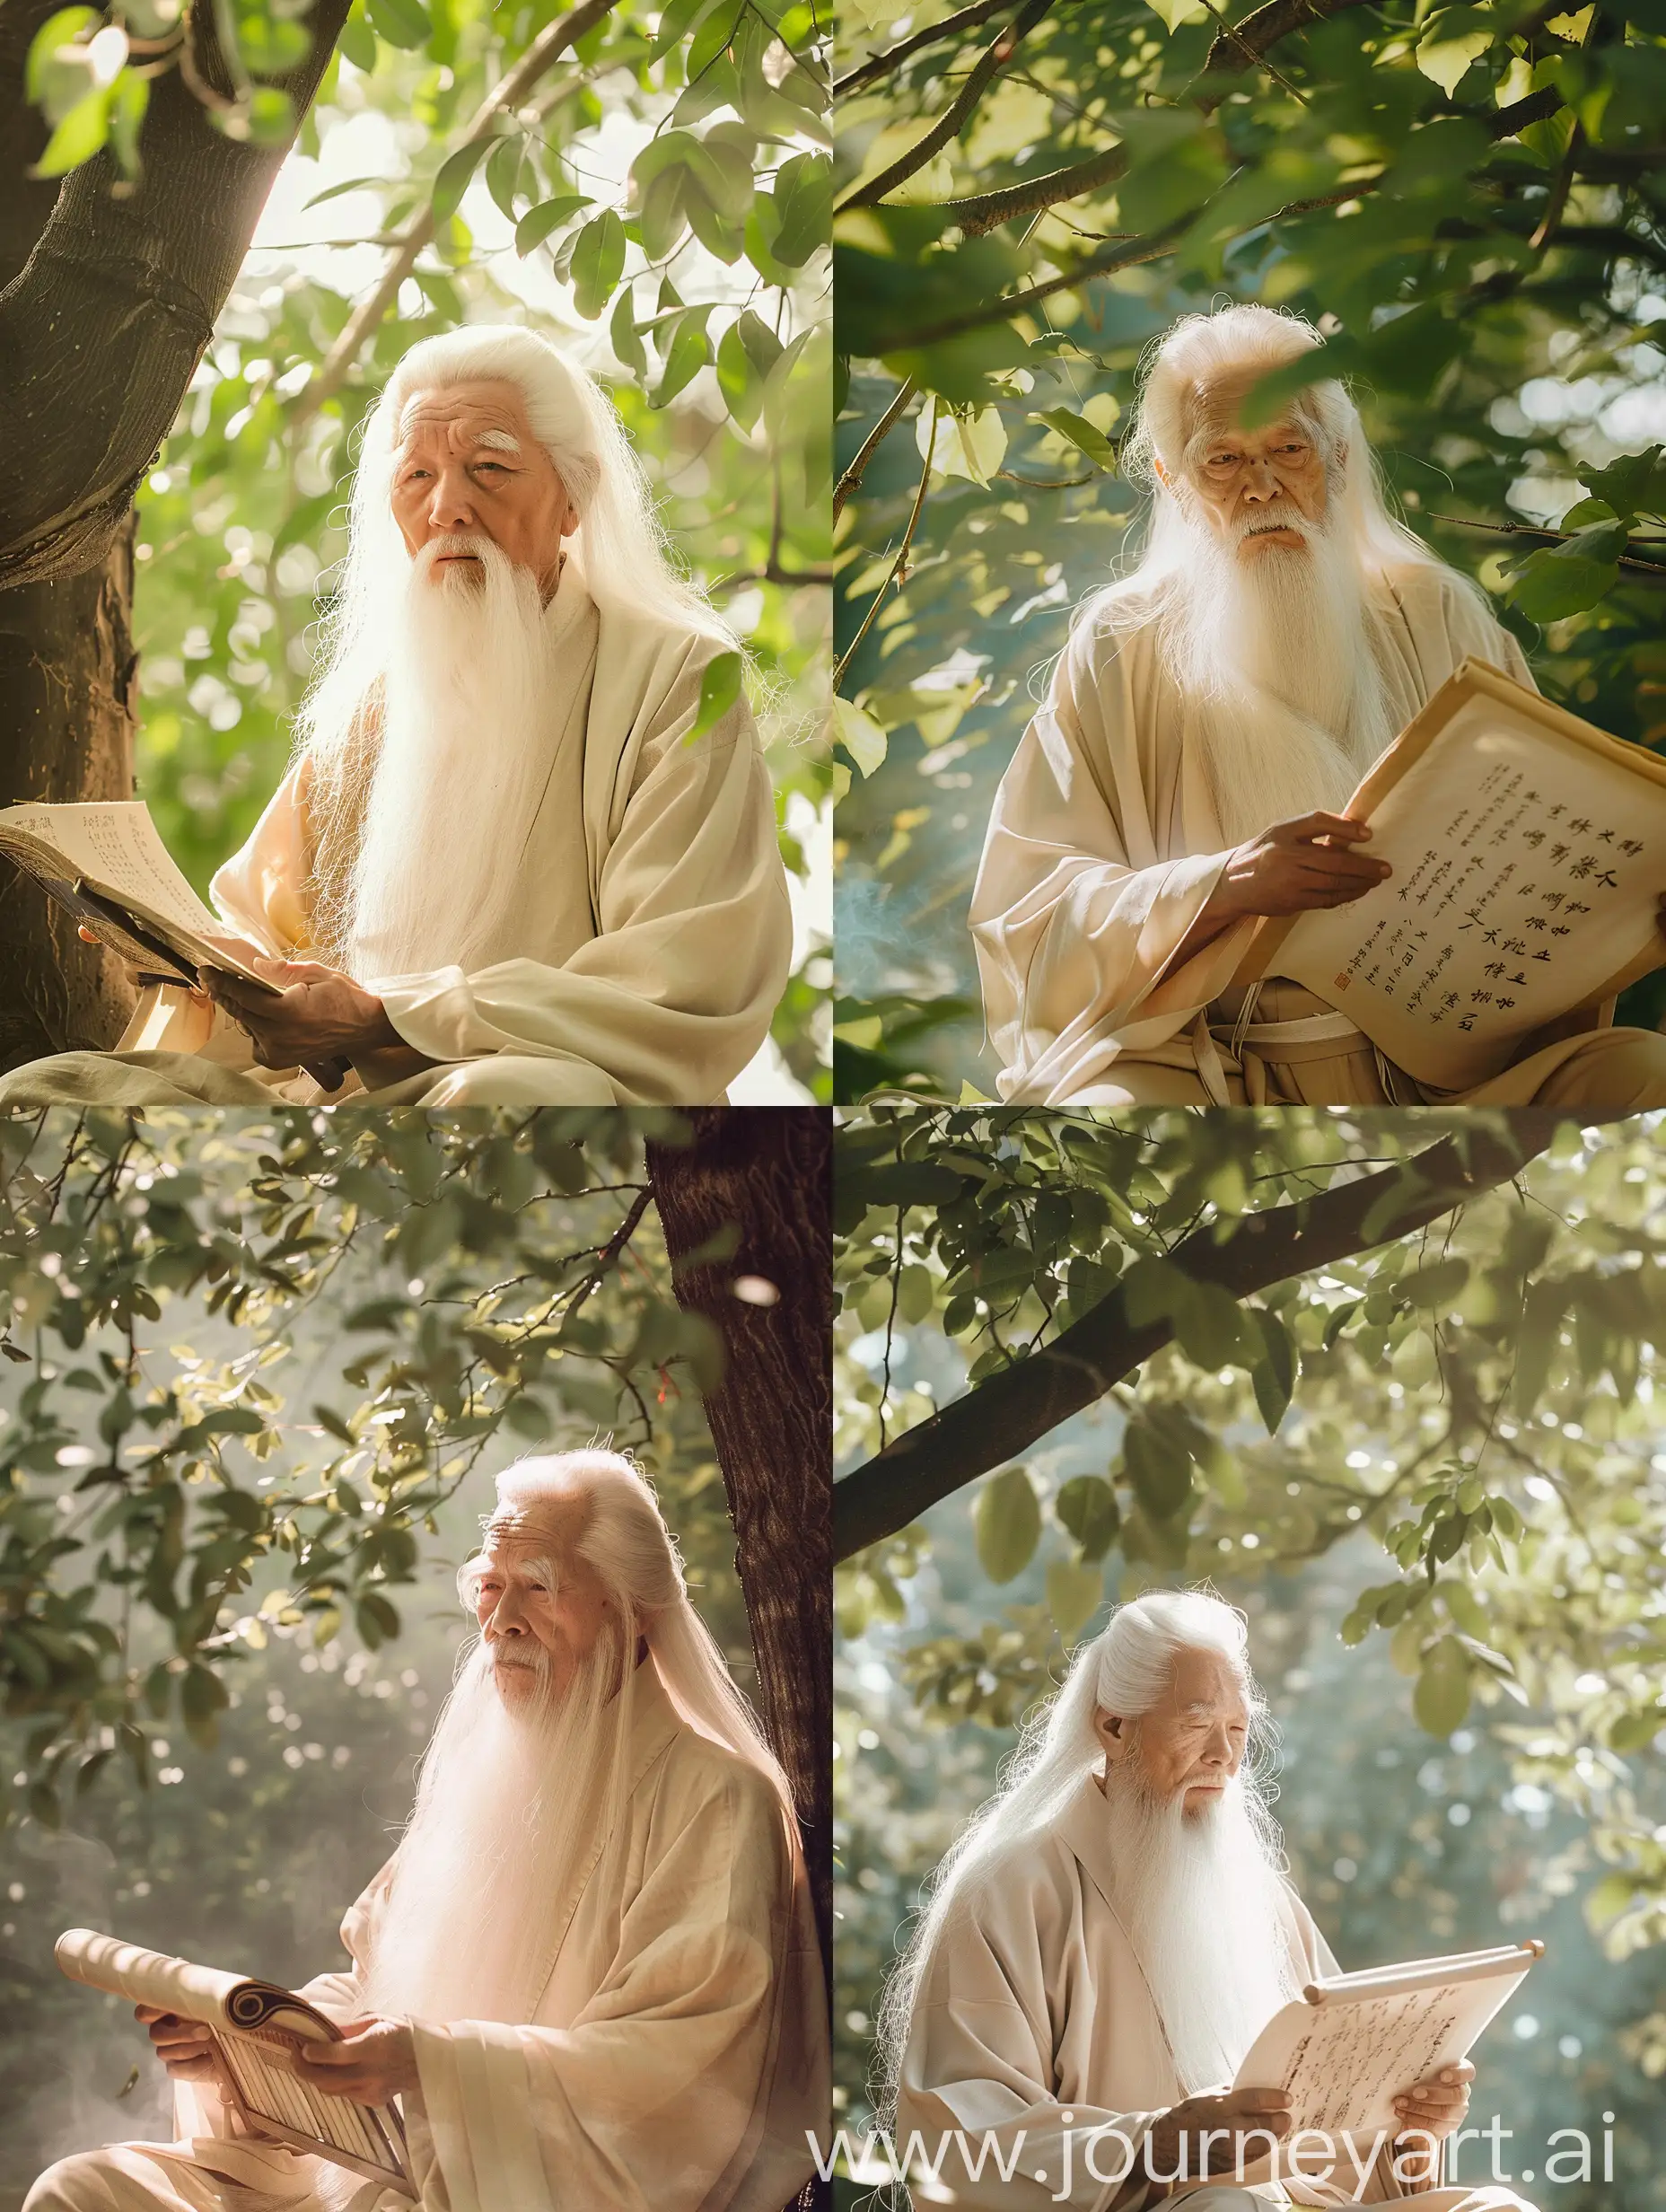 在这个电影般的场景中，一个留着长长白胡子的中国老人在树下，手捧着一卷书专注地阅读。他的脸上洋溢着岁月的痕迹，透露出智慧和沉静。老人身穿深米色传统的中国服饰，呈现出受中国古代艺术影响的风格。整个场景弥漫着一种深沉而神秘的氛围，仿佛将人们带入了一个古老的文化殿堂。阳光透过树叶洒在老人身上，营造出一种梦幻般的效果。这个电影般的场景将中国古代艺术的影响融入其中，展现出文化的底蕴和深度。老人的阅读姿态和周围的环境相得益彰，仿佛在诉说着一个古老而美丽的故事。